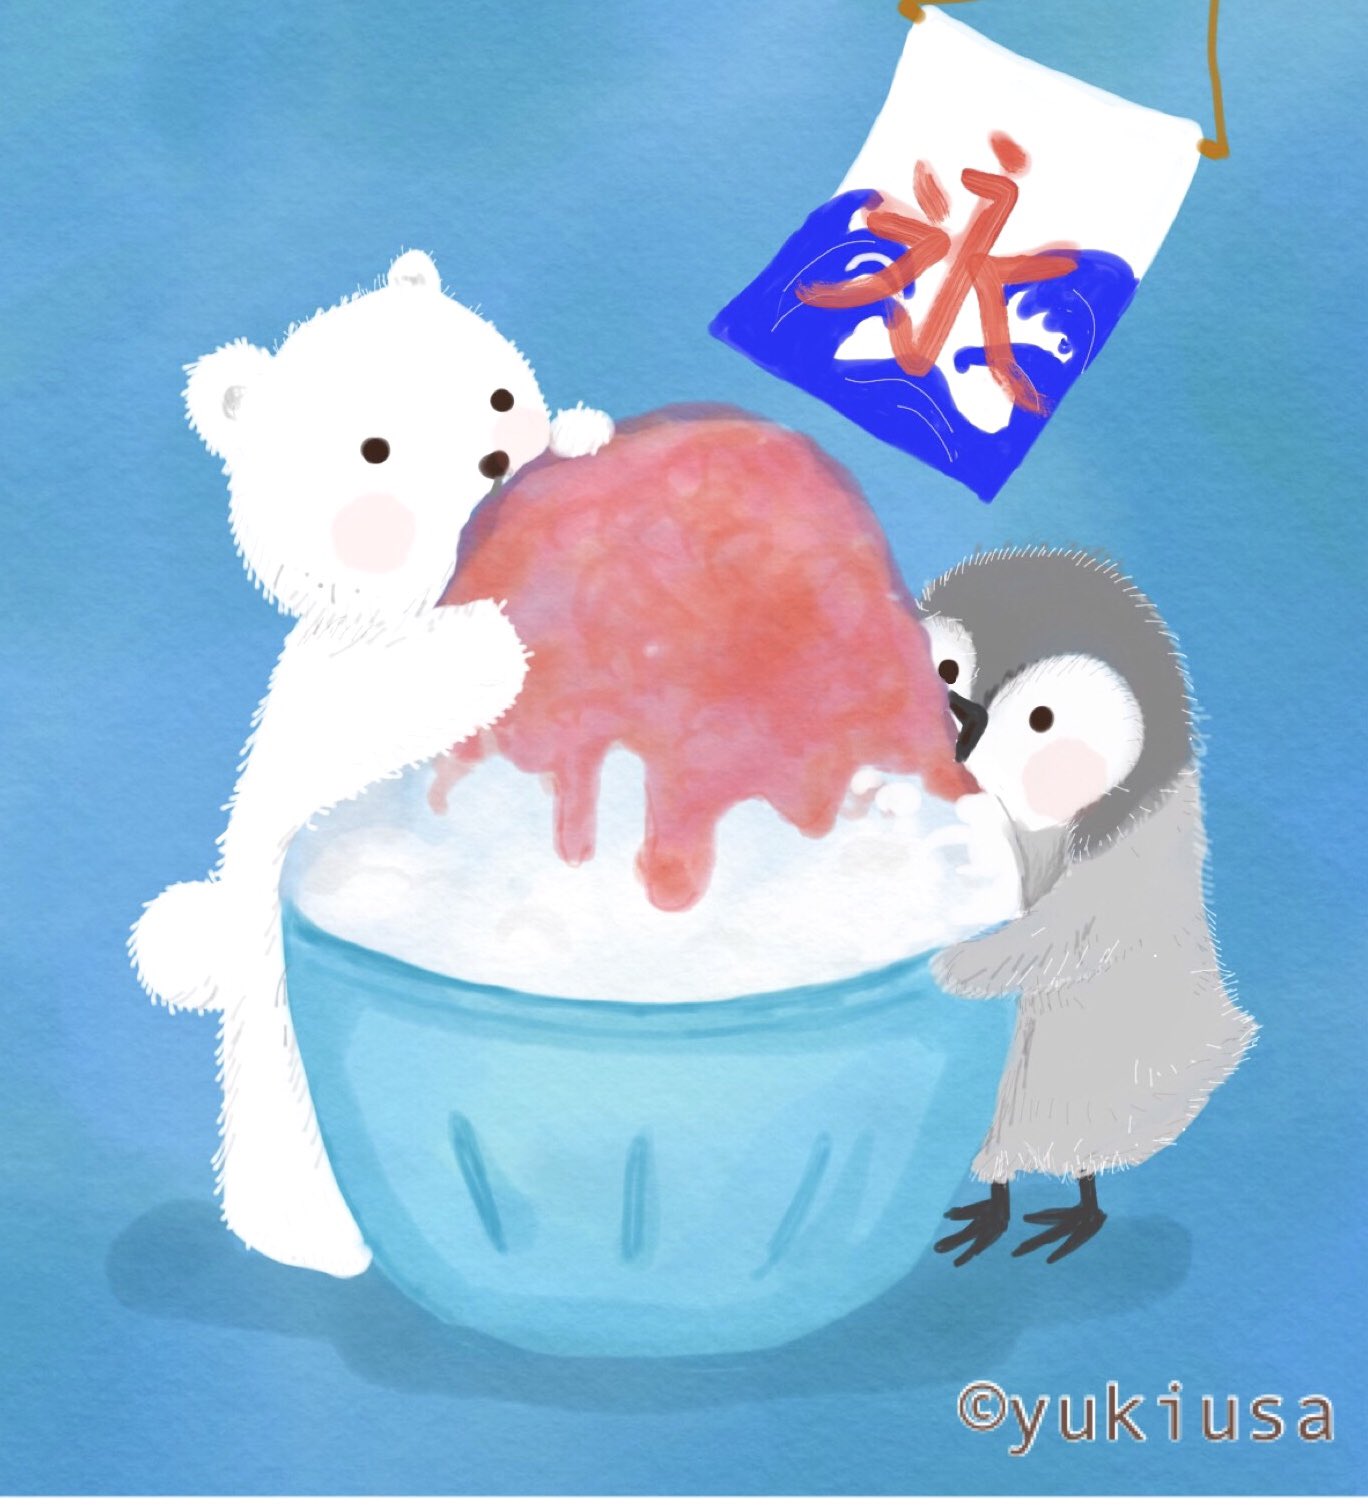 ゆきうさ イラスト えほん お客様 お待たせいたしました いちごかき氷です 暑いので 味見させてくれますか ʕ ᴥ ʔ イラスト かき氷 しろくま ペンギン Illustration Illustrator Penguin Polarbear T Co Rs5ufrhmoq Twitter